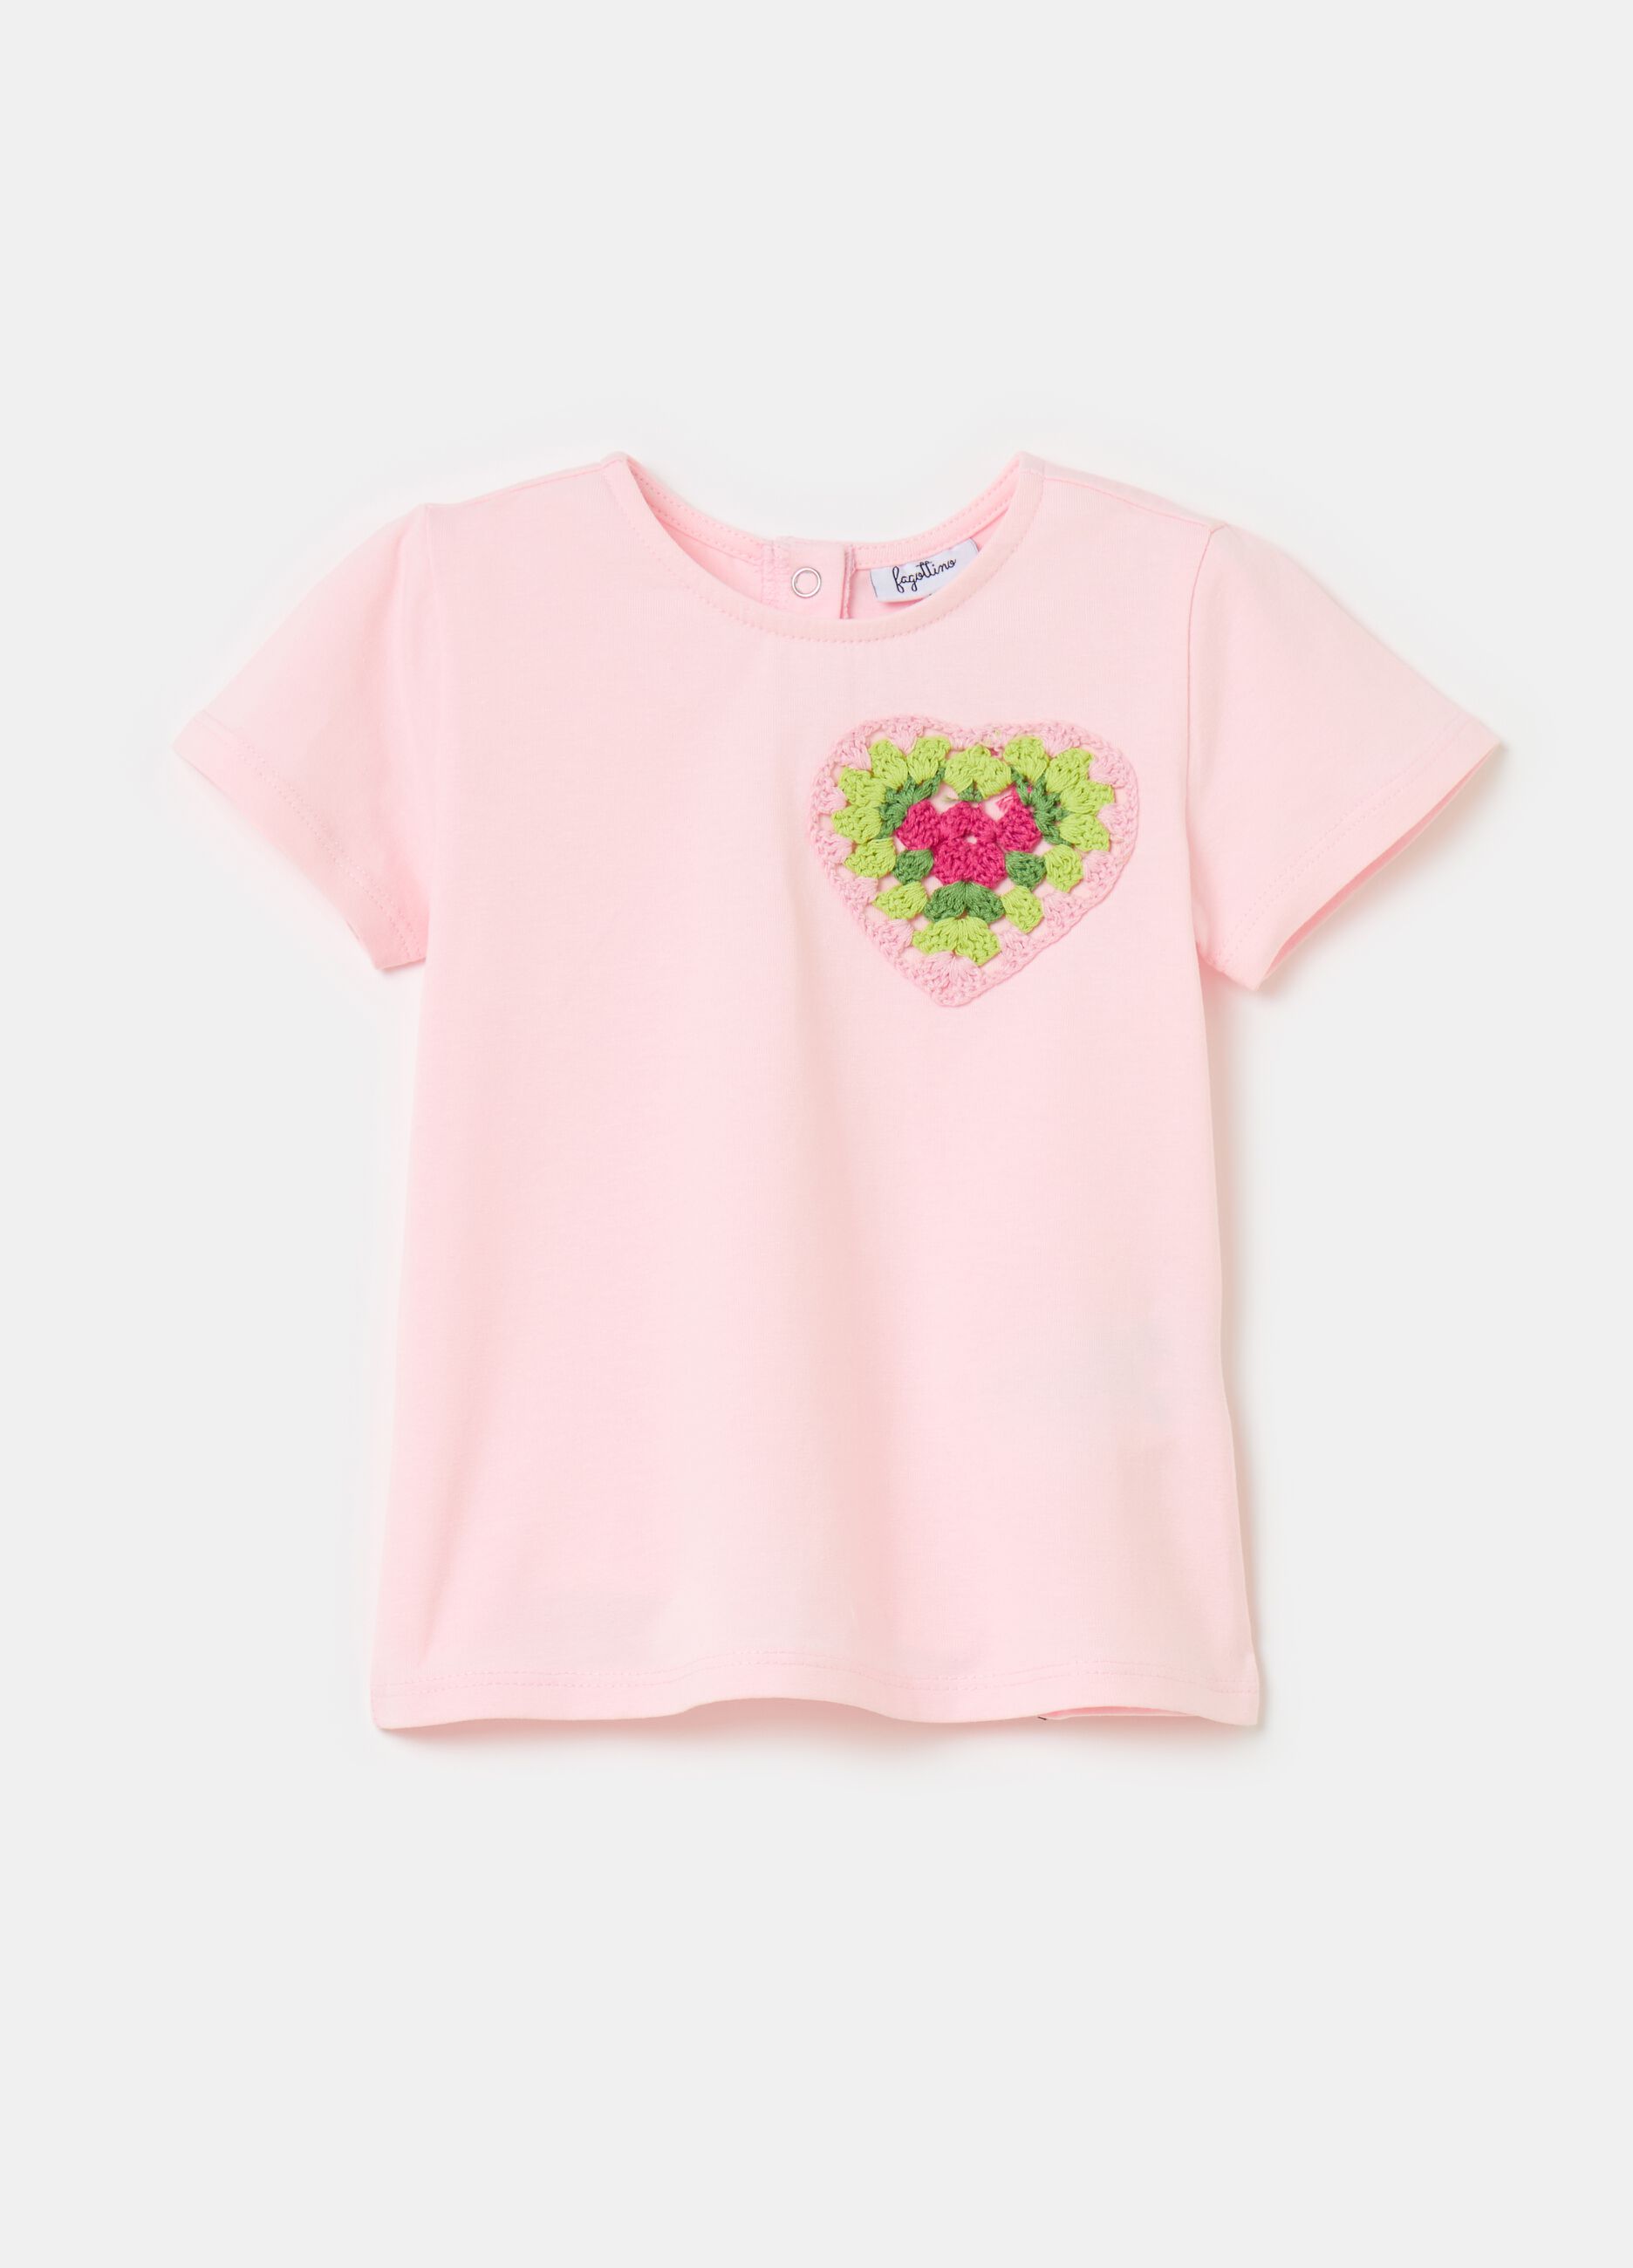 T-shirt with crochet heart application